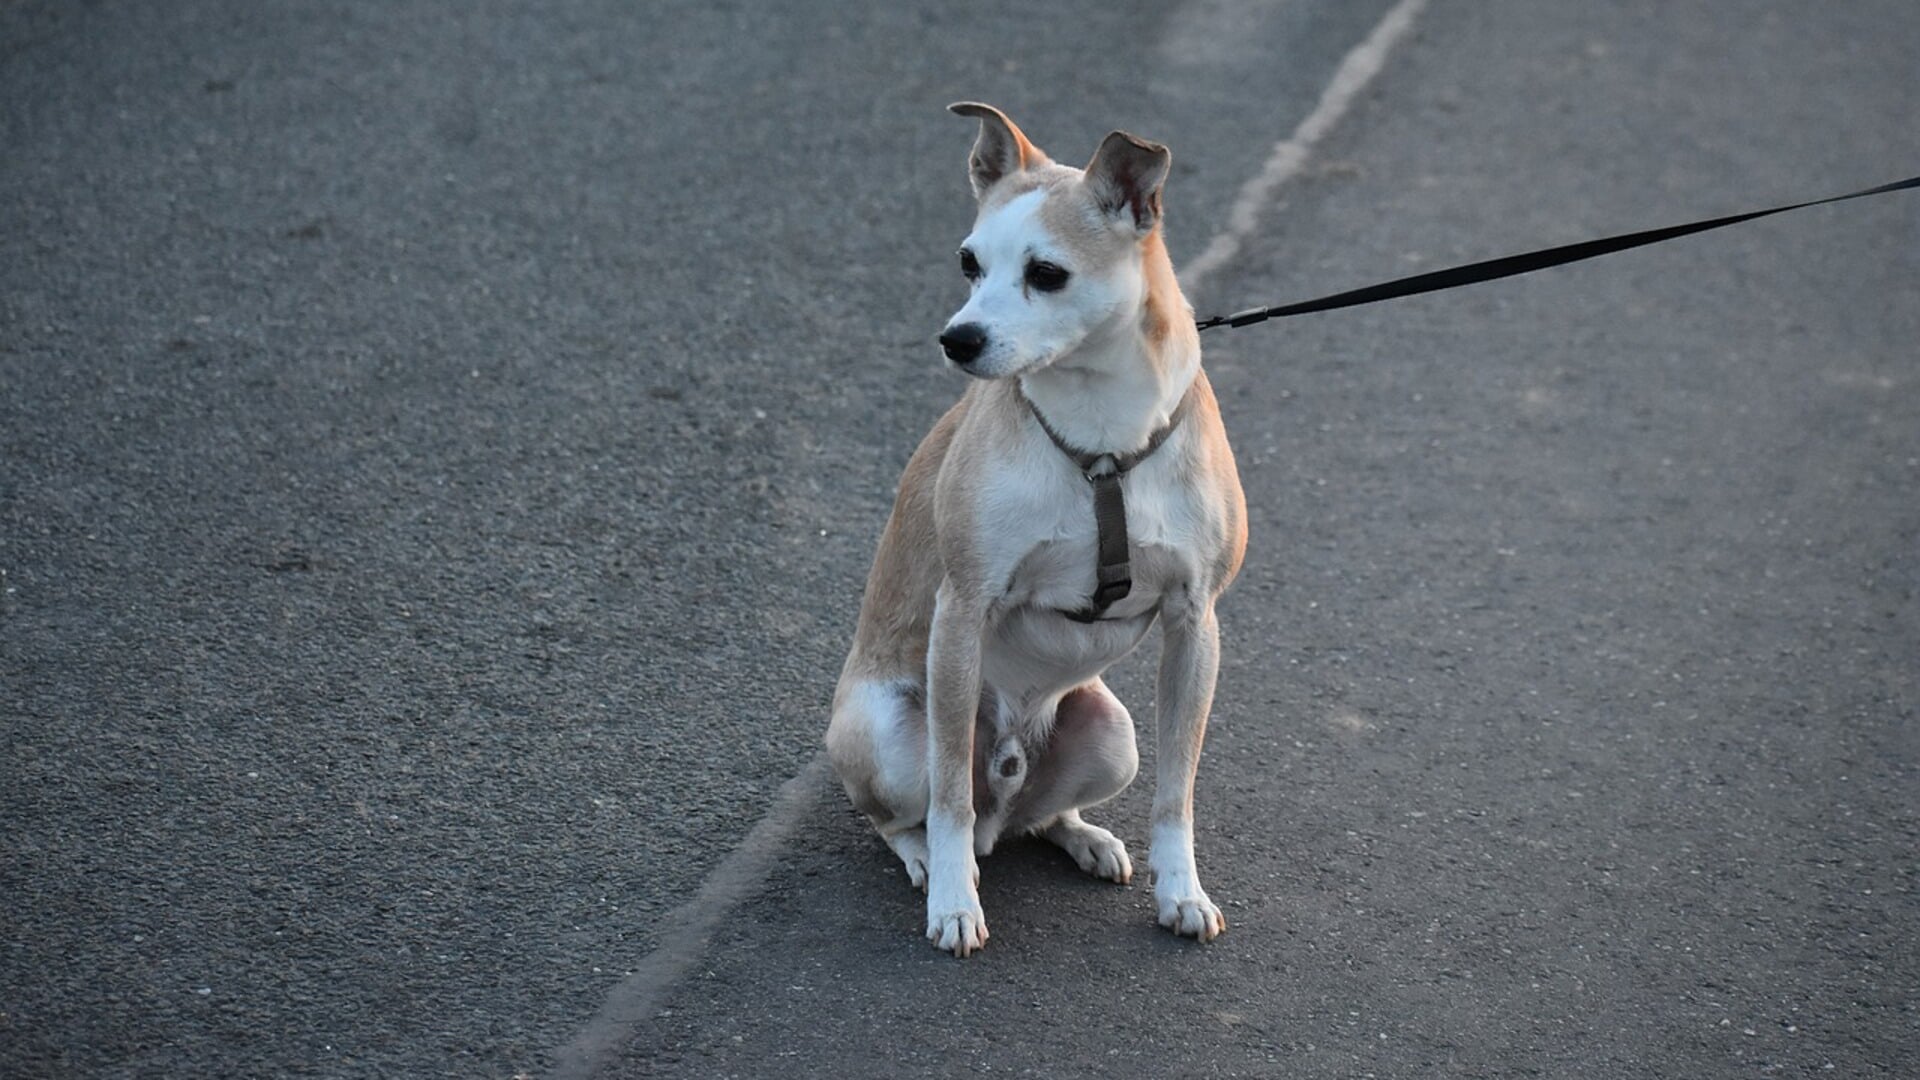 Honden dienen in de openbare ruimte aan de lijn te worden gehouden en wie dat achterwege laat, kan volgens de APV een boete verwachten van 90 euro per overtreding.